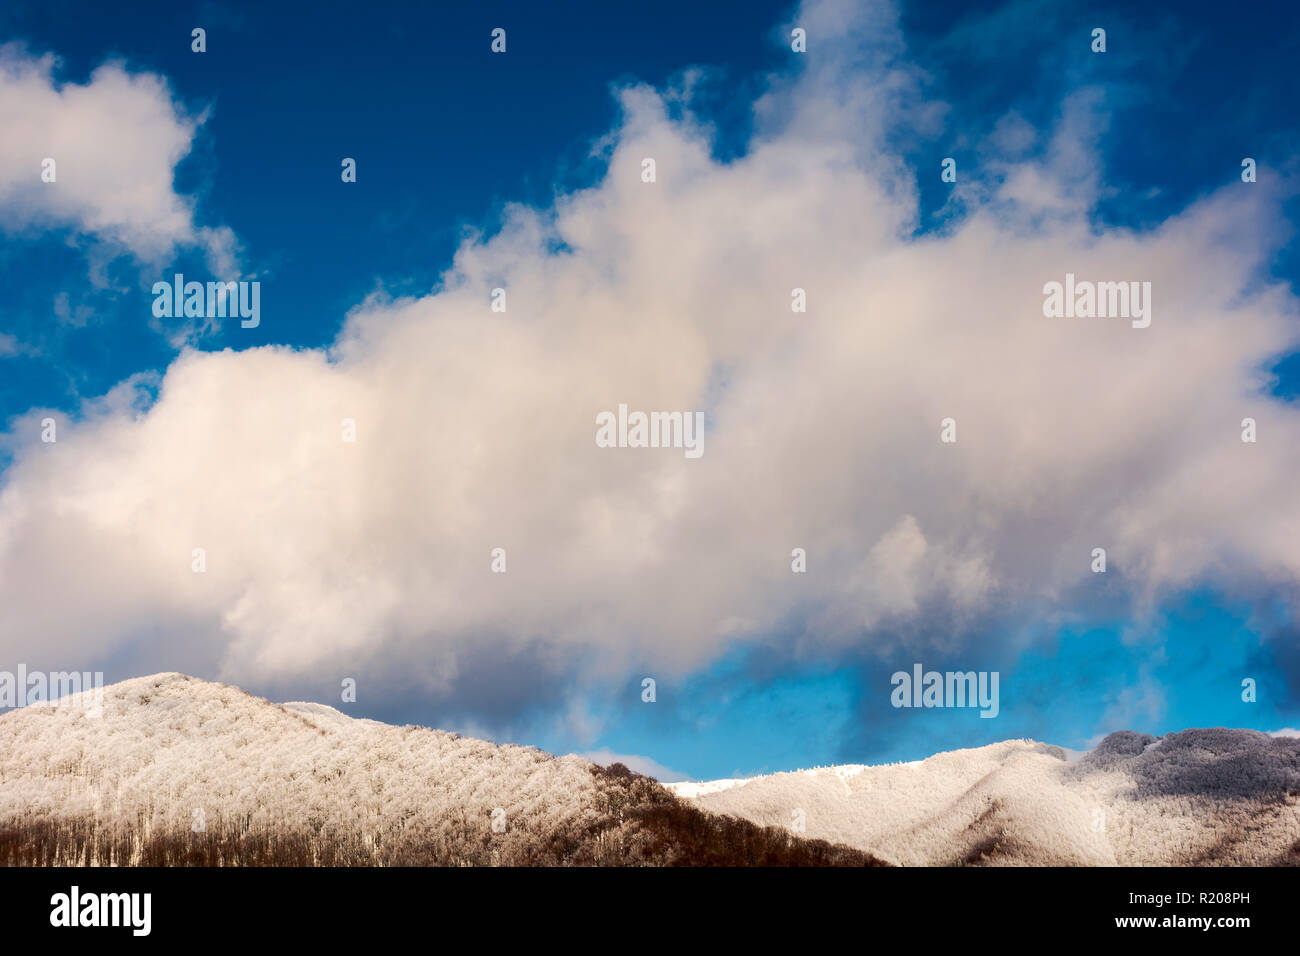 Enorme nube soffice abow la collina boschiva in neve. meravigliosa natura invernale sullo sfondo Foto Stock